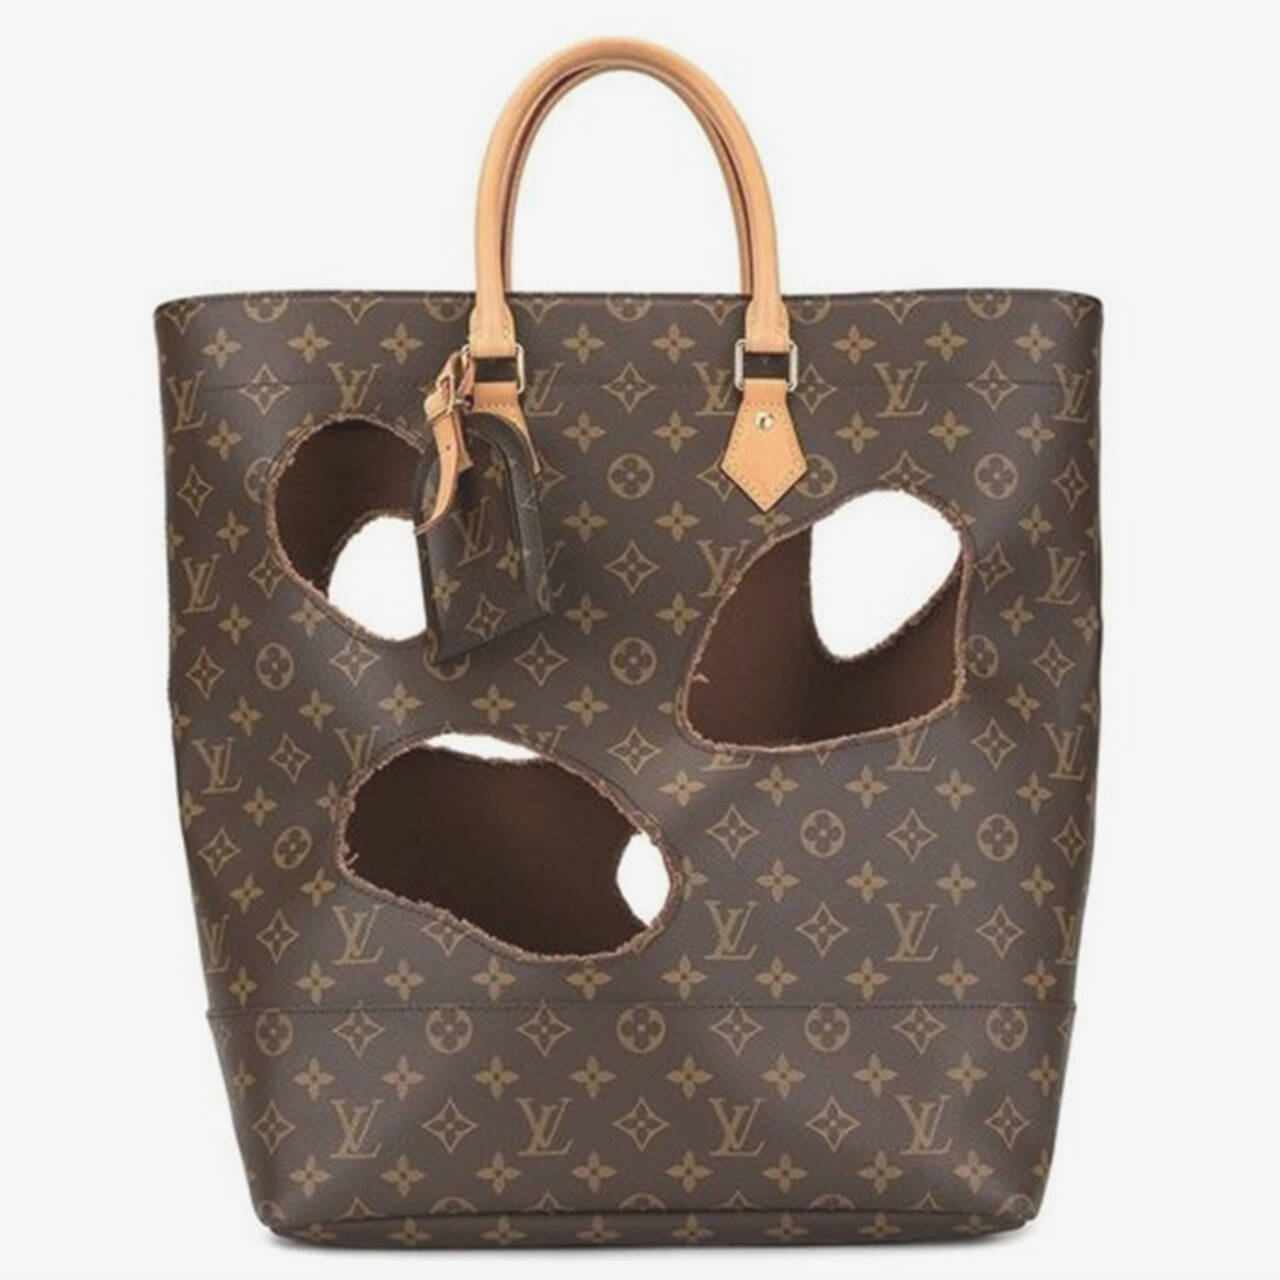 Дырявая сумка Louis Vuitton почти за миллион рублей возмутила покупателей:  Стиль: Ценности: Lenta.ru